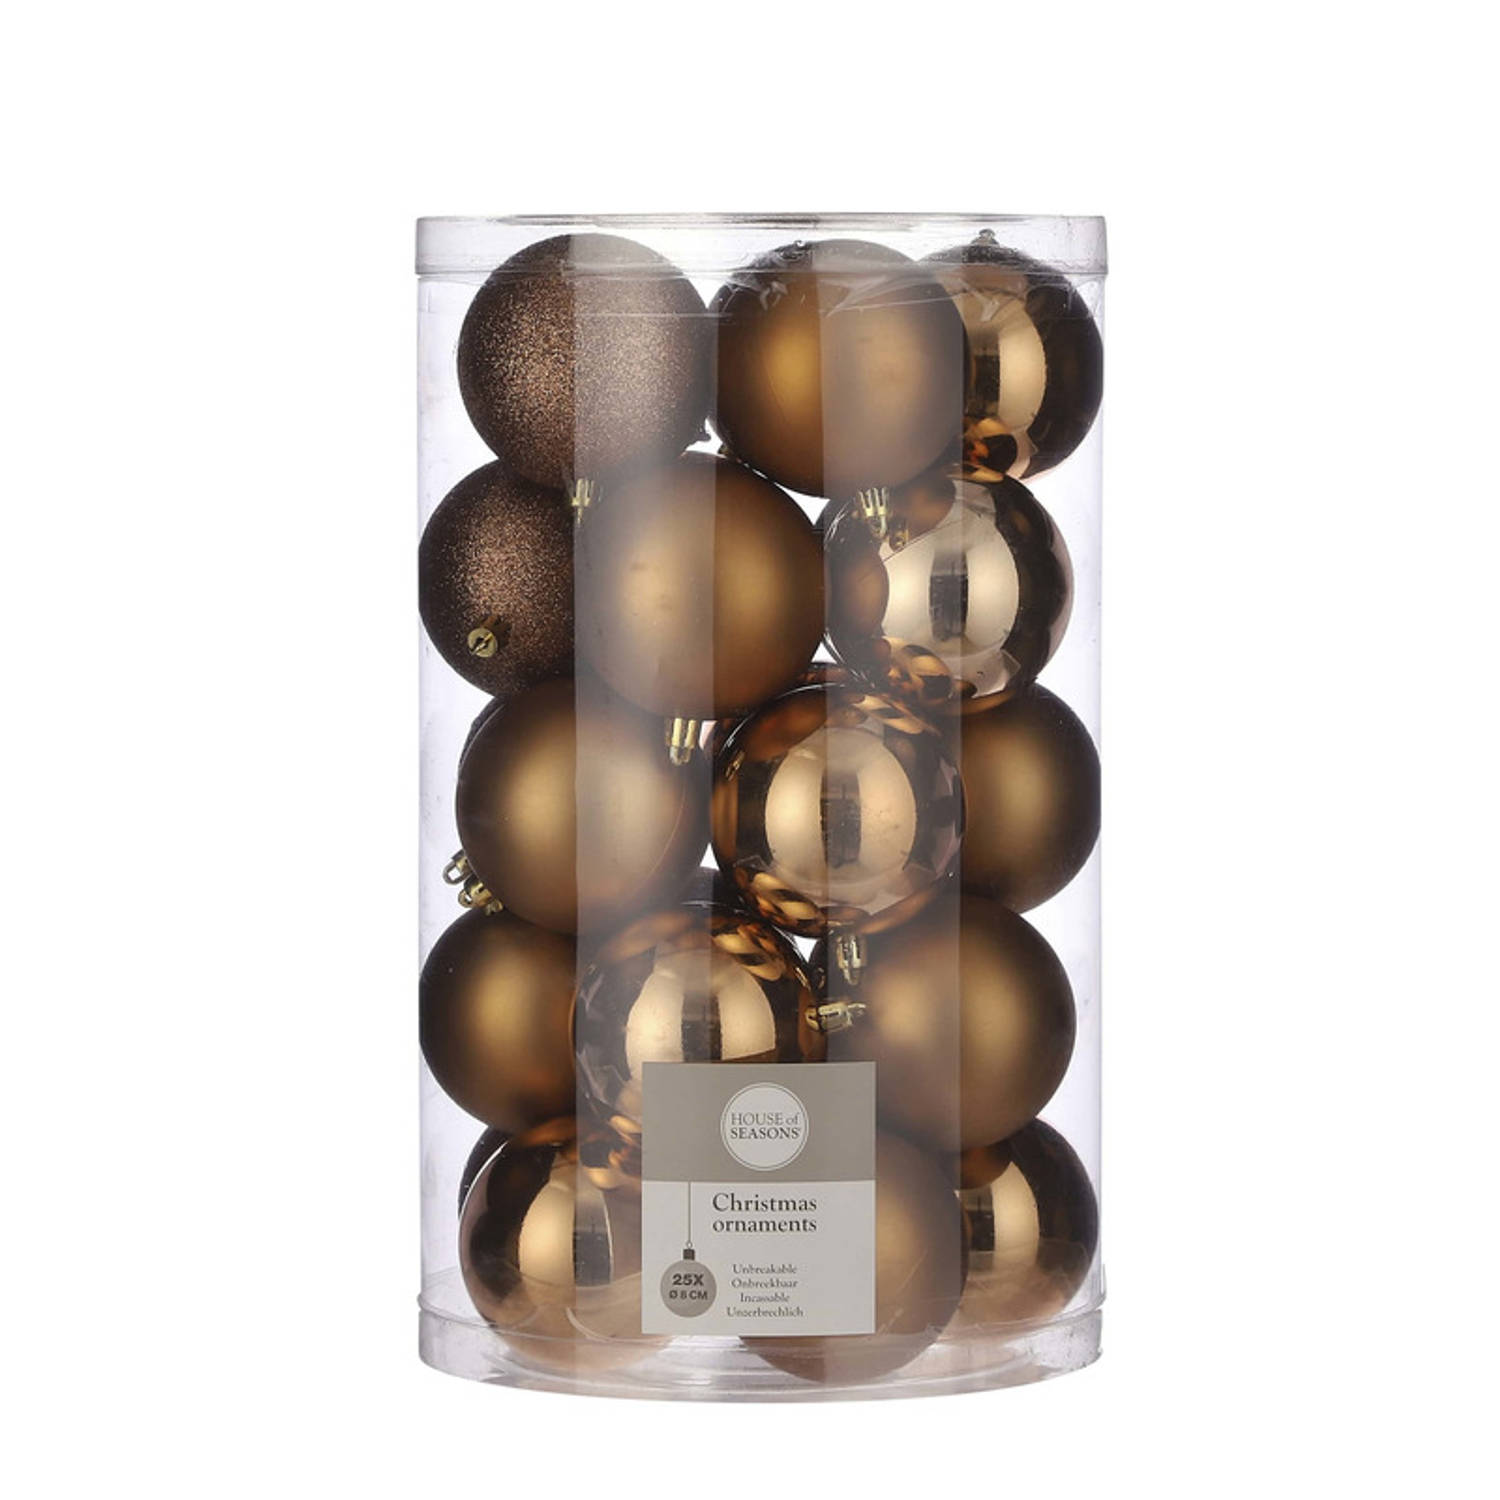 Onbreekbare kunststof kerstballen licht koper pakket 25-delig licht koperen kerstballen 8 cm Kerstbo